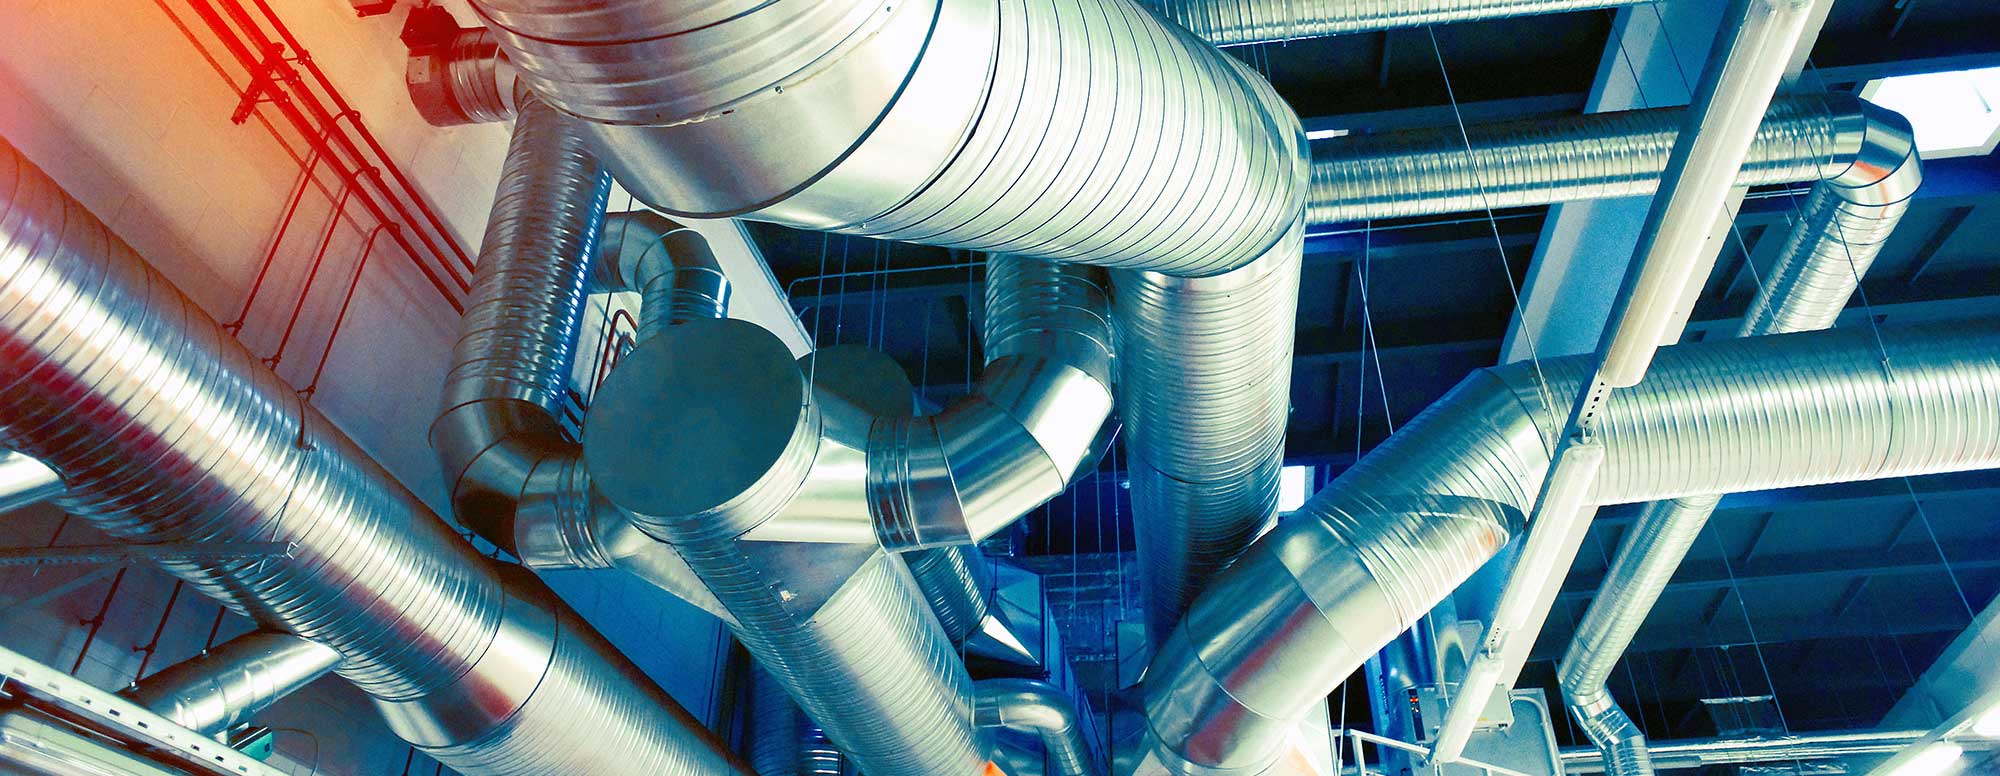 Эффективные вентиляционные системы для промышленности: разбираемся в особенностях, преимуществах и нюансах